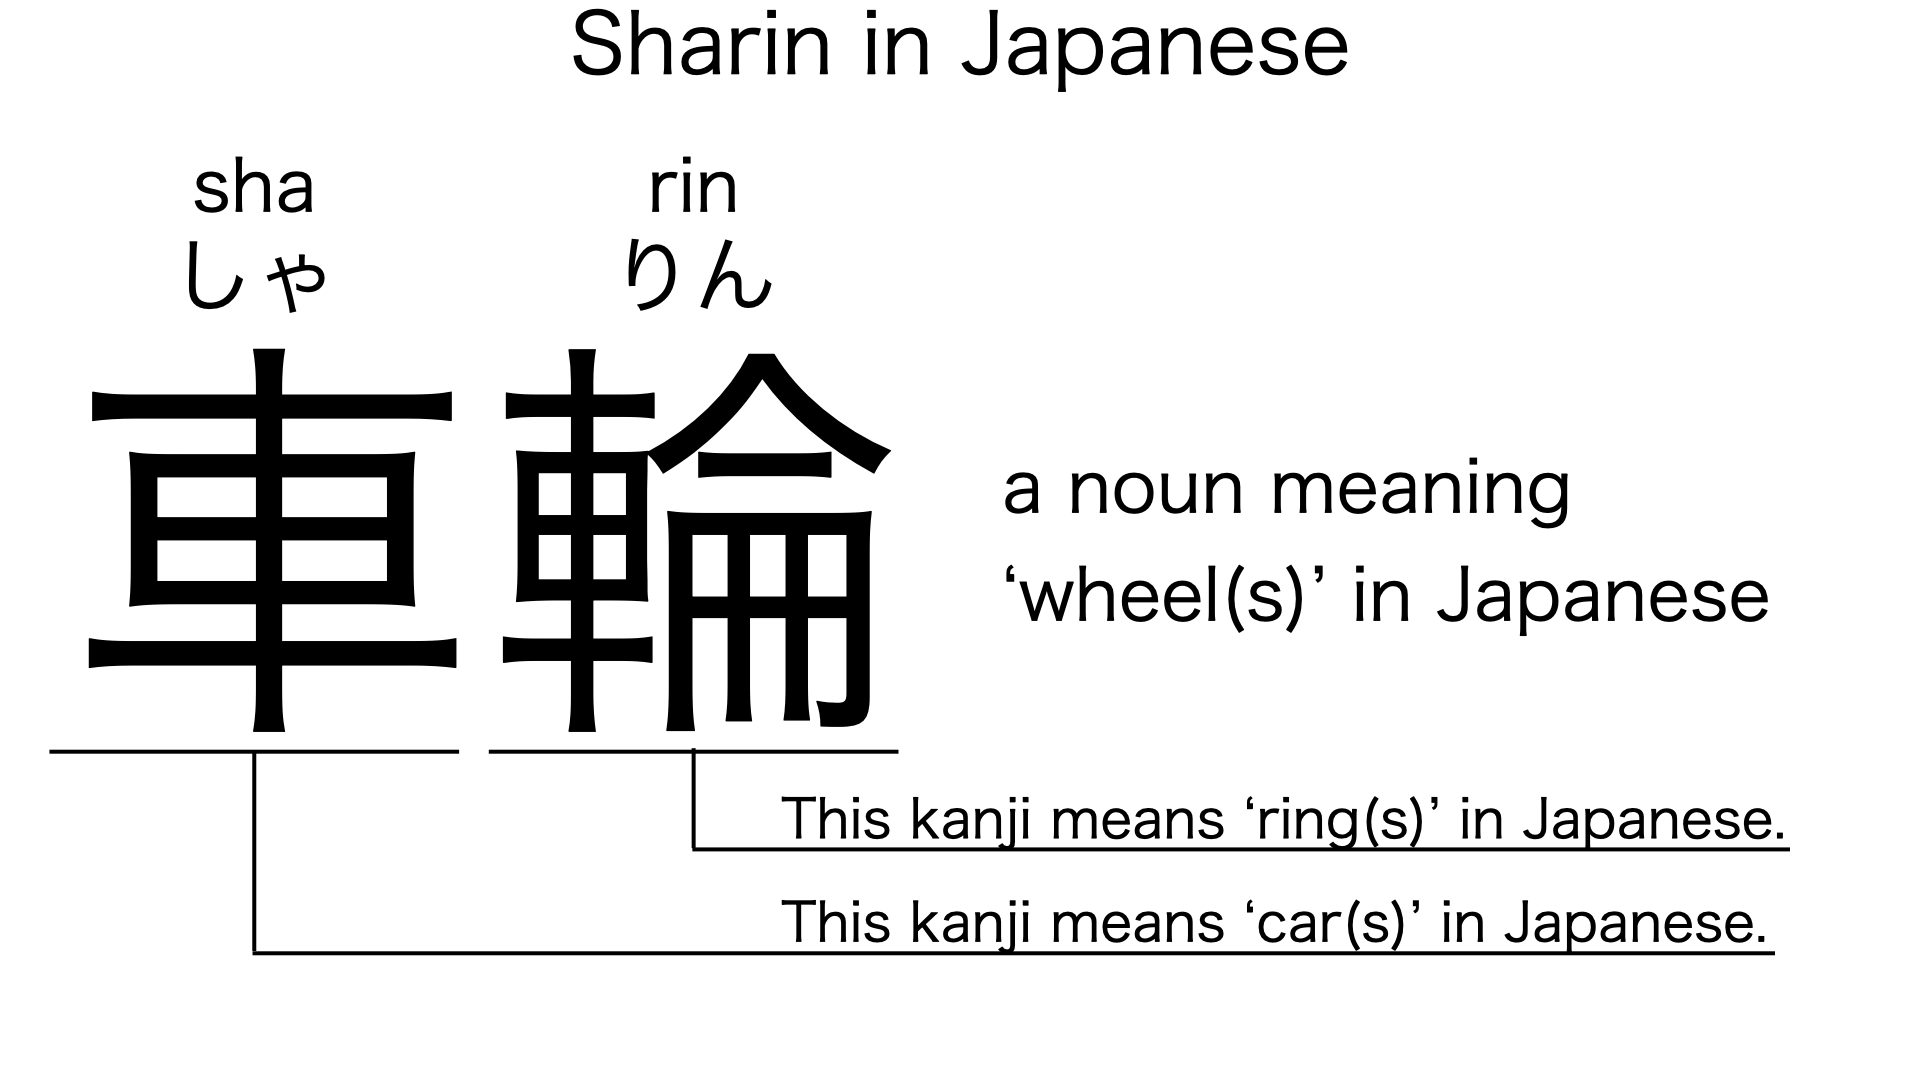 sharin in japanese